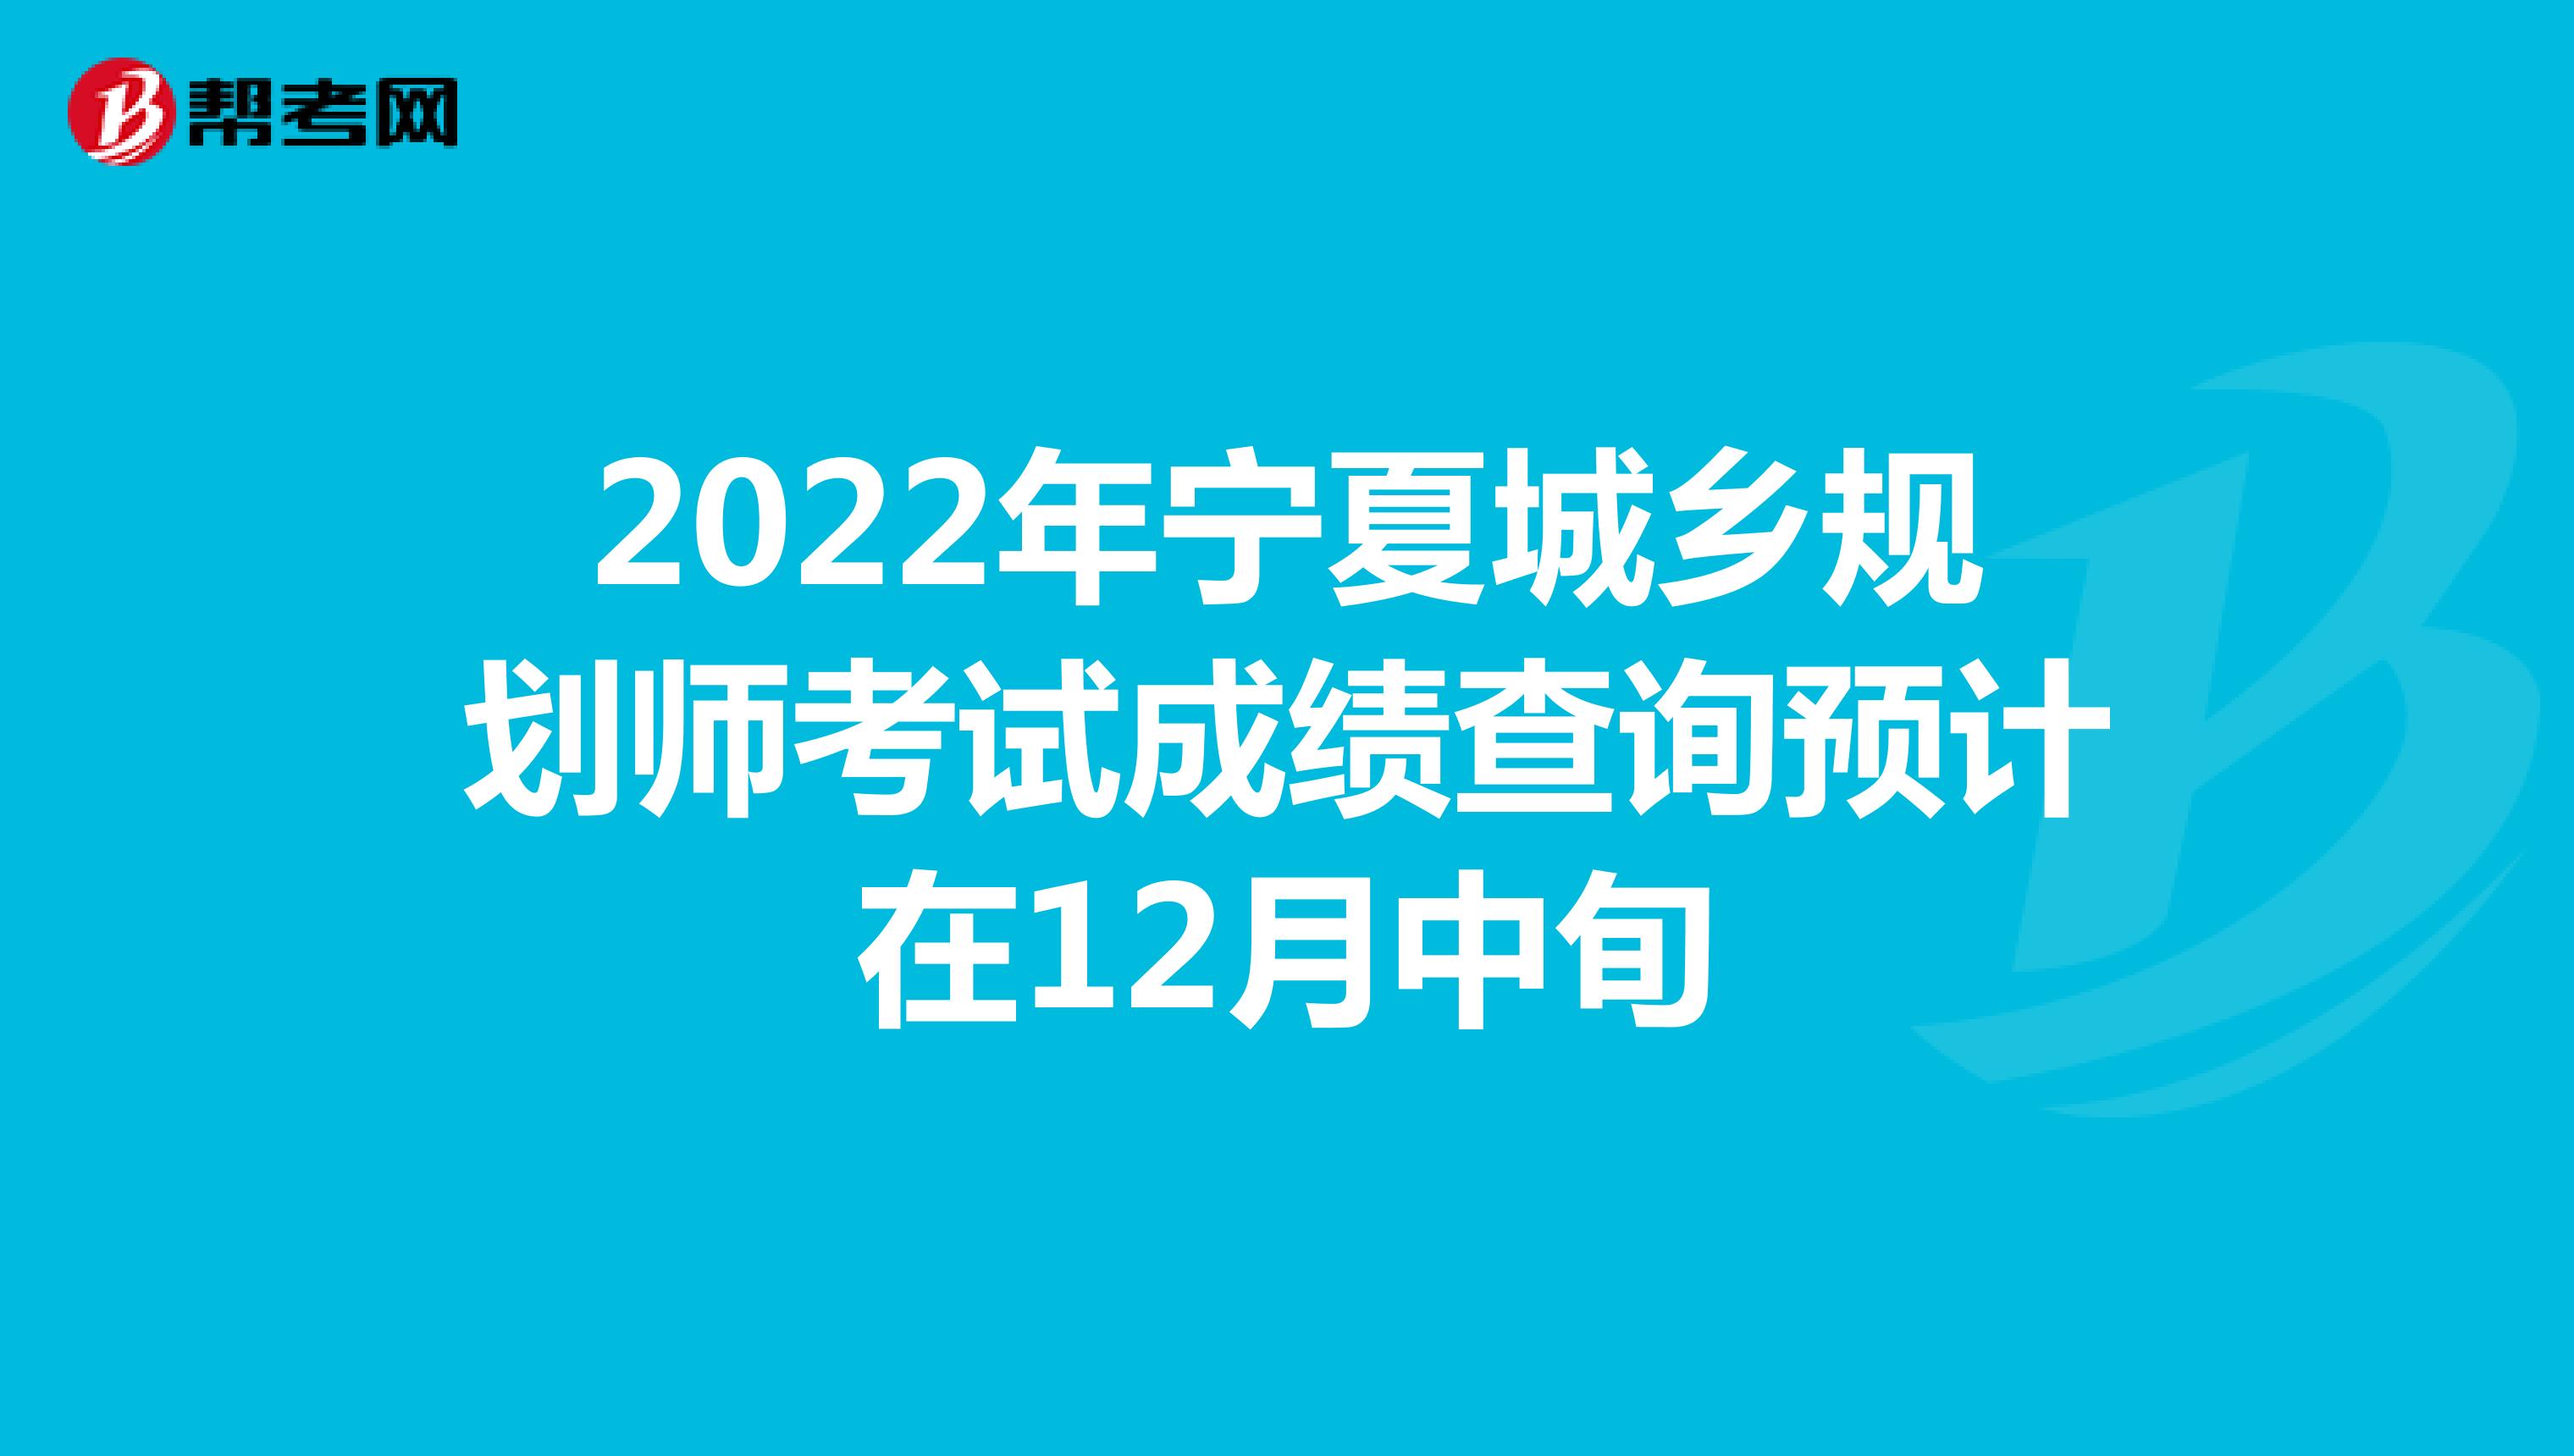 2022年宁夏城乡规划师考试成绩查询预计在12月中旬